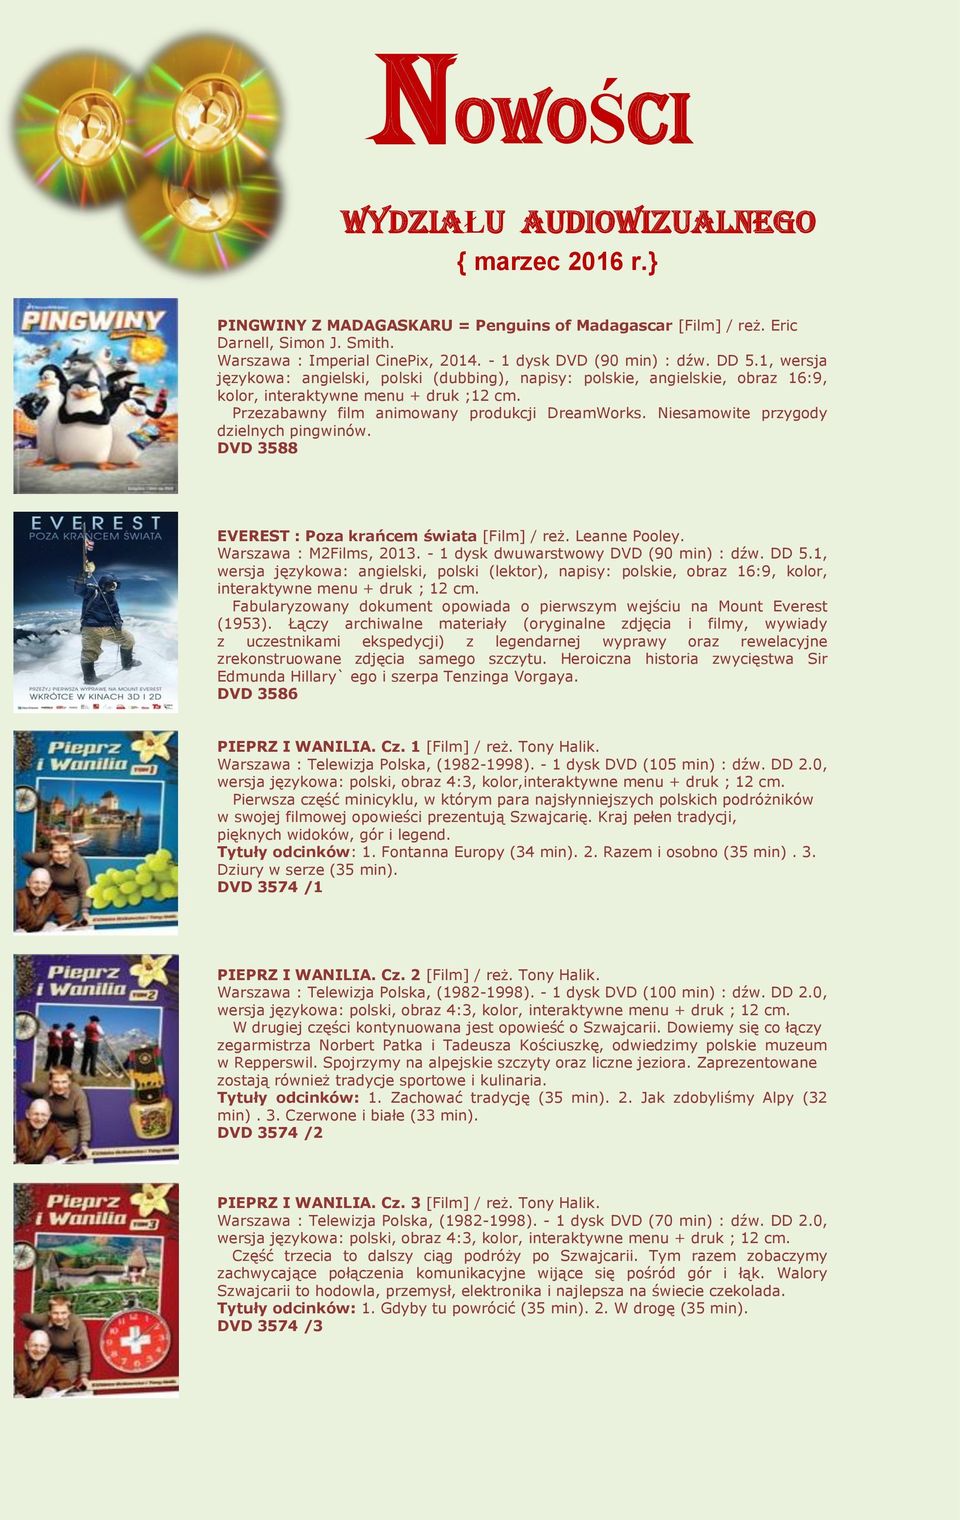 Przezabawny film animowany produkcji DreamWorks. Niesamowite przygody dzielnych pingwinów. DVD 3588 EVEREST : Poza krańcem świata [Film] / reż. Leanne Pooley. Warszawa : M2Films, 2013.